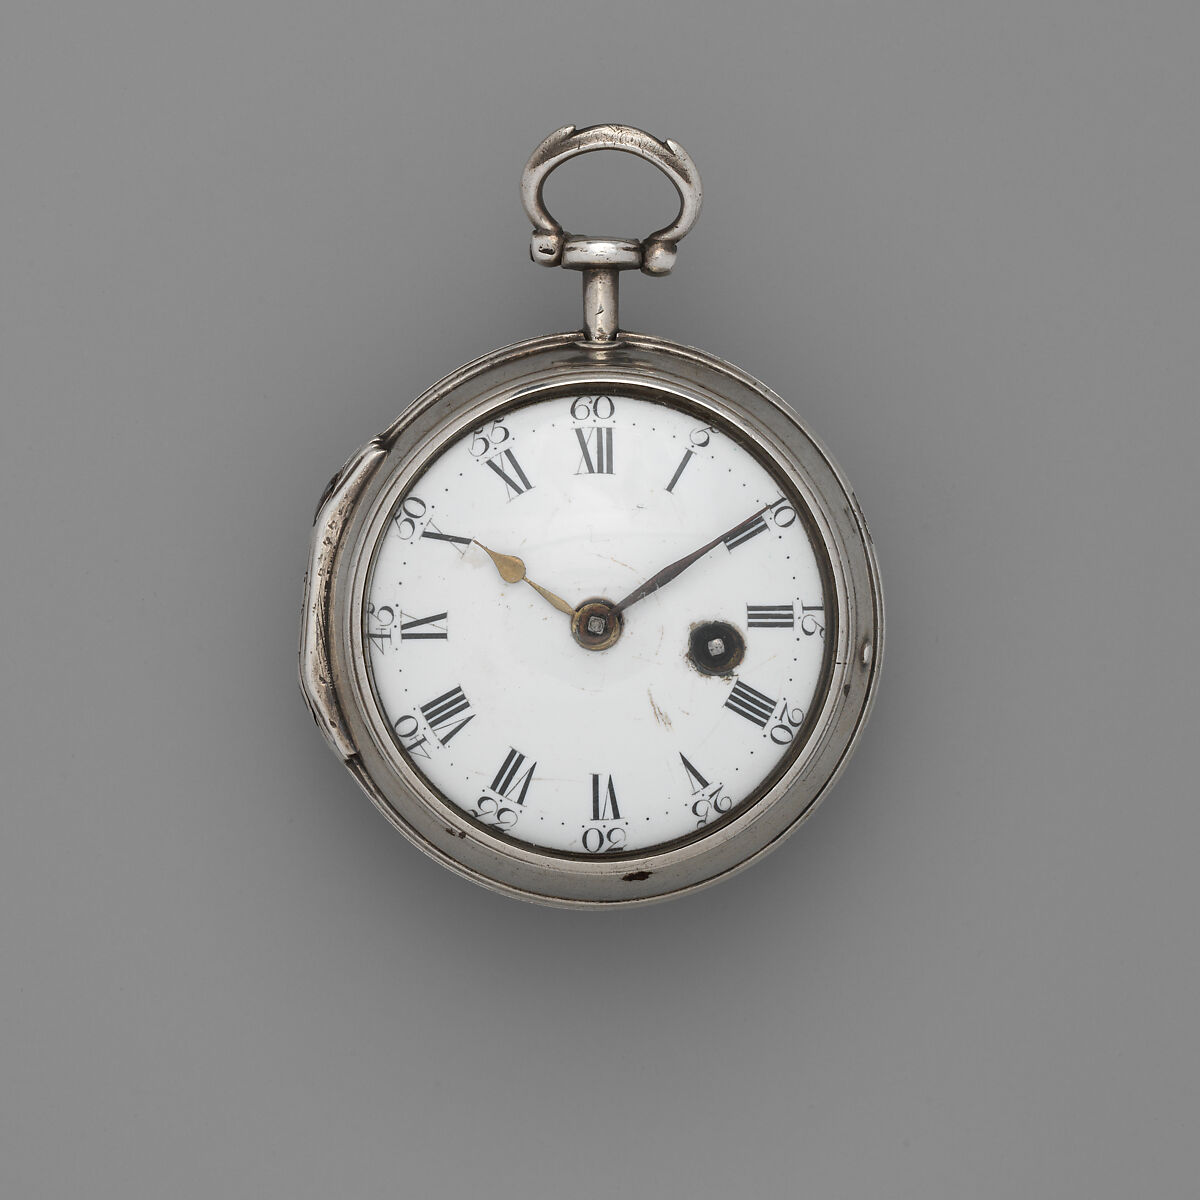 Watch, Watchmaker: W. Moore, Silver, glass, enamel, British, London 